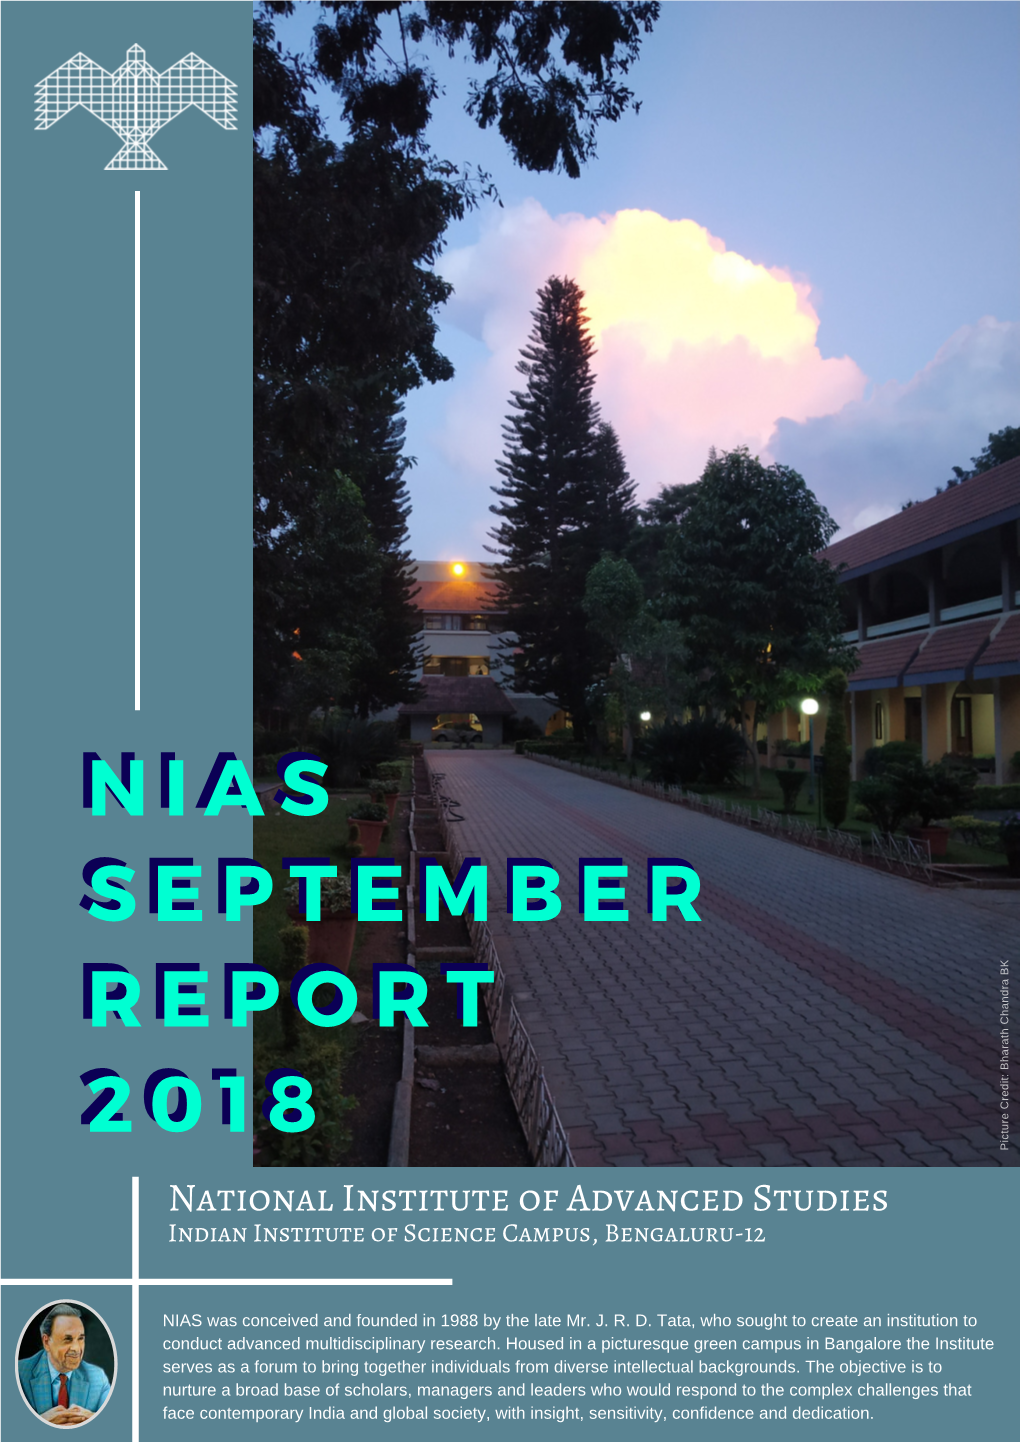 NIAS September Report 2018